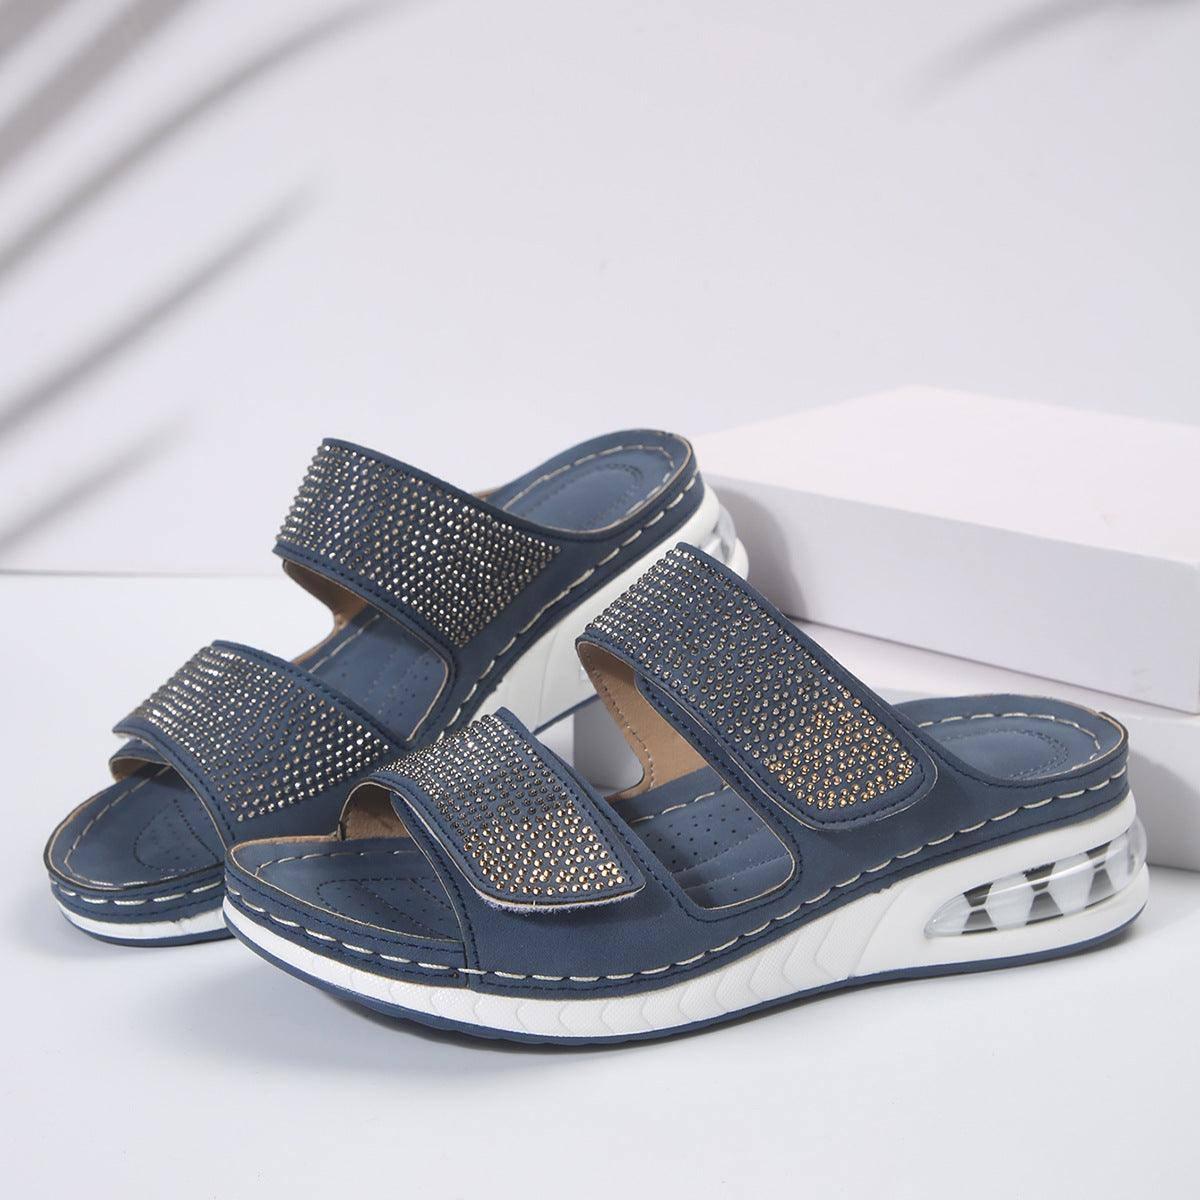 New Air Cushion Wedges Sandals Summer Casual Rhinestone-Dark Blue-9